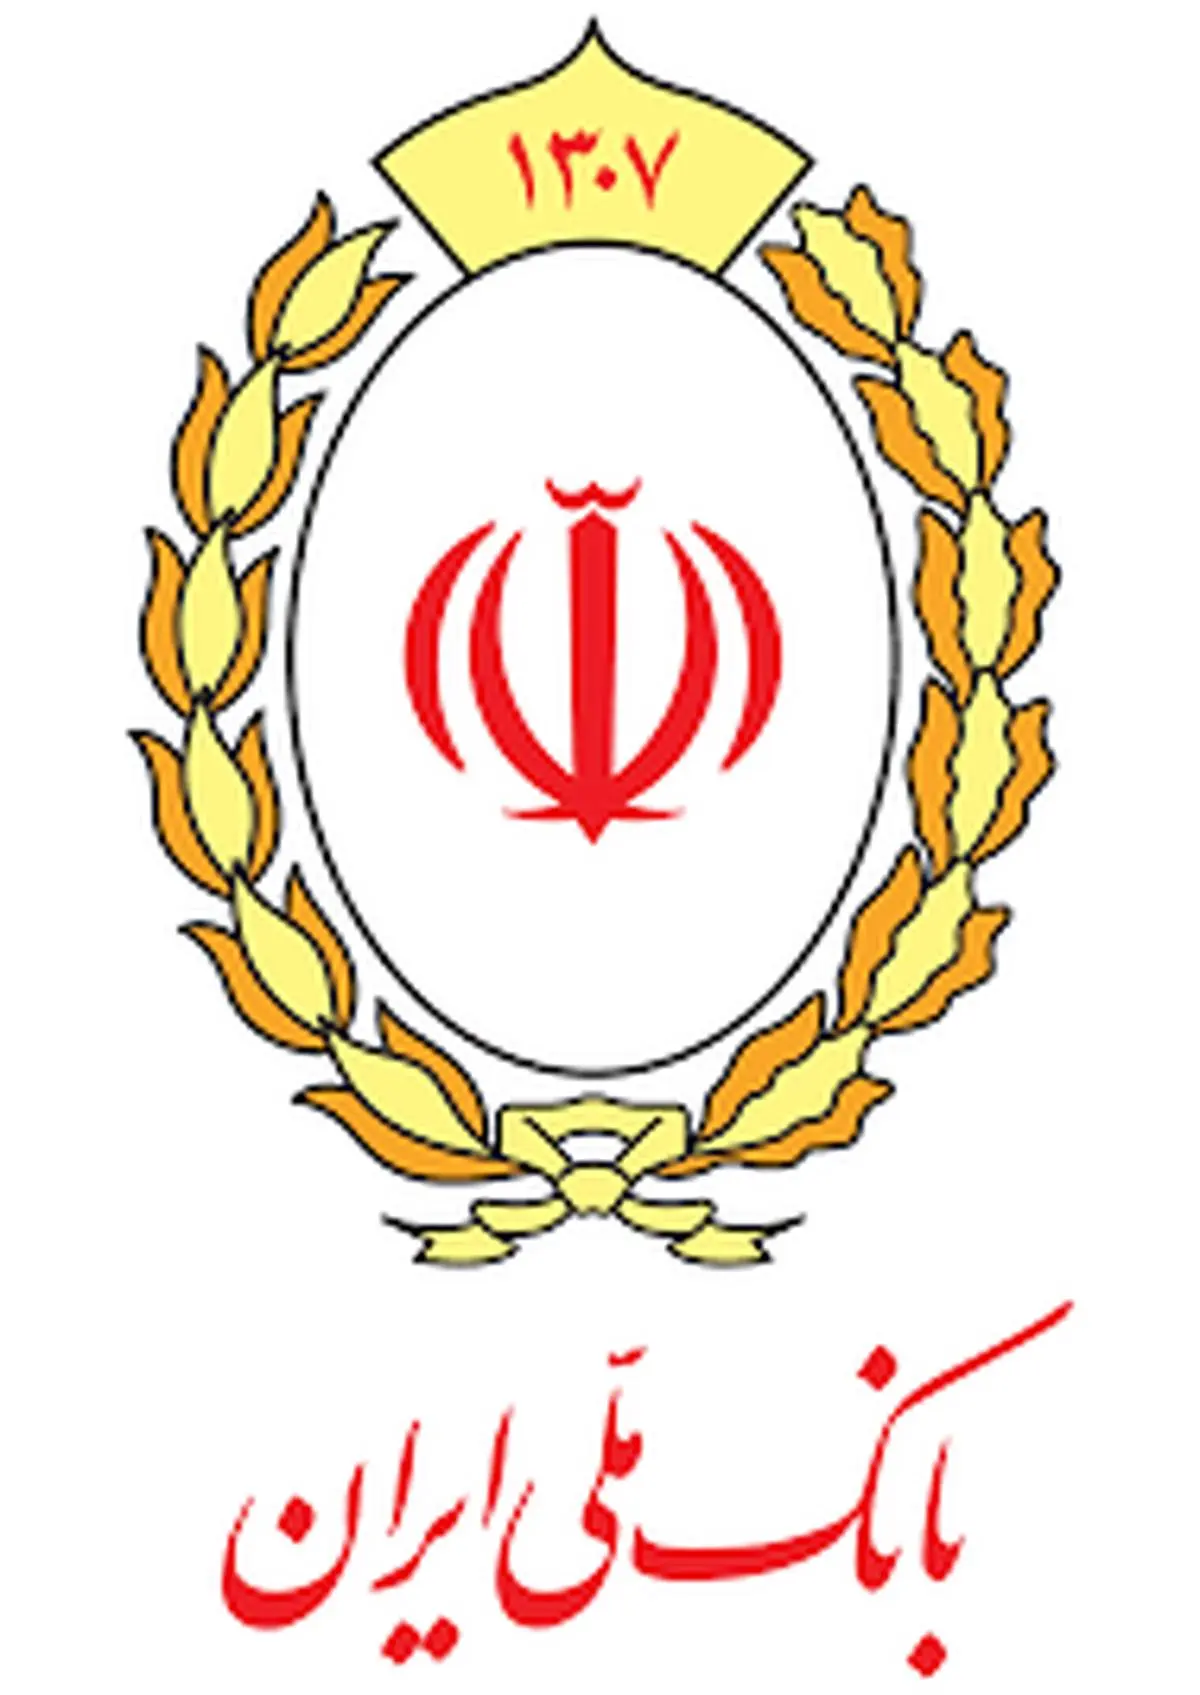 بانک ملی ایران میزبان معاونان حقوقی و پشتیبانی شبکه بانکی کشور

